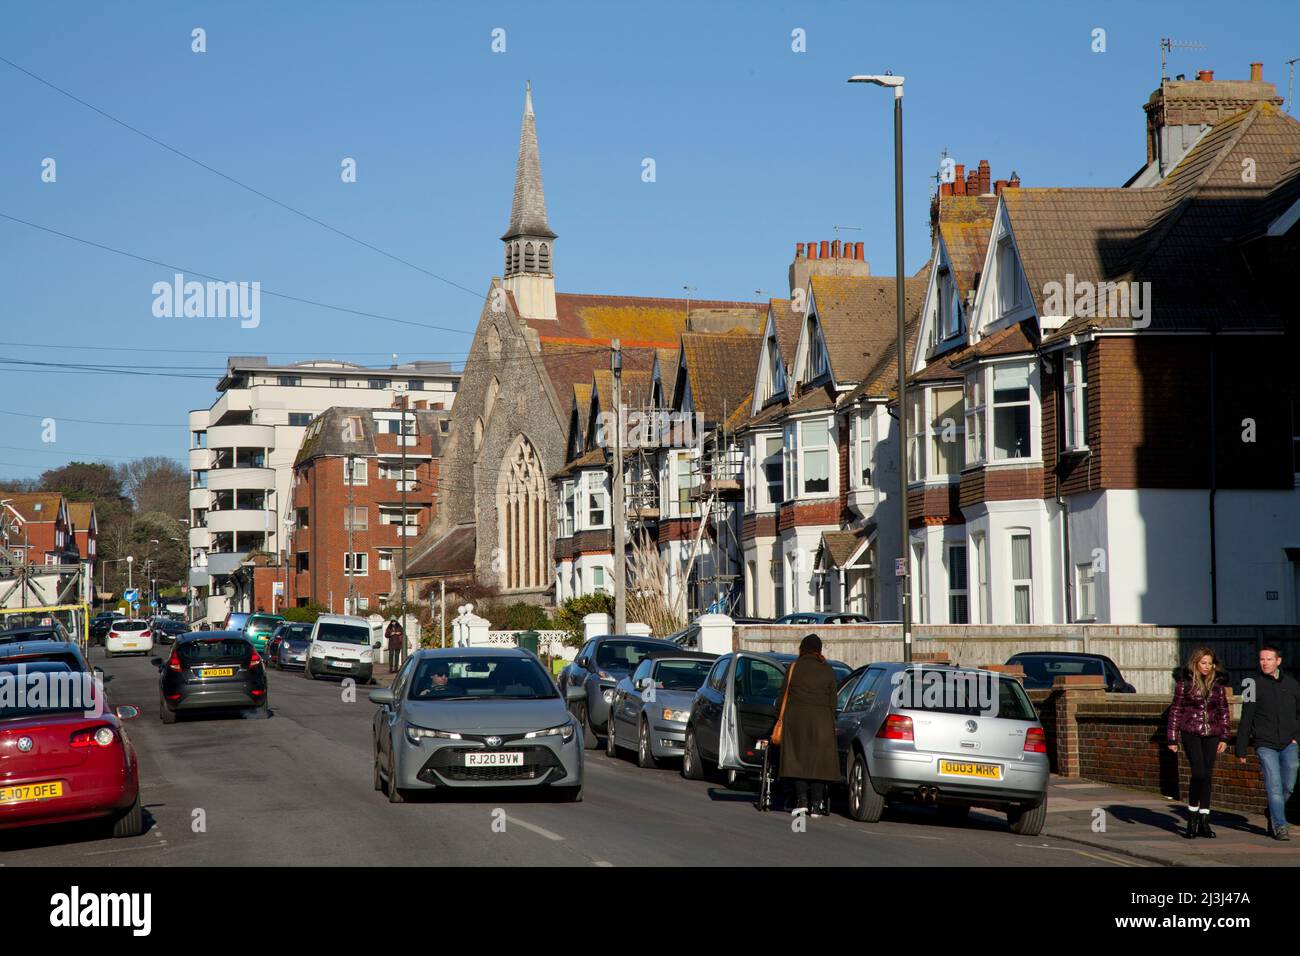 Bexhill-on-Sea, Sussex, rue résidentielle avec église, variété de logements, voitures et un couple Banque D'Images